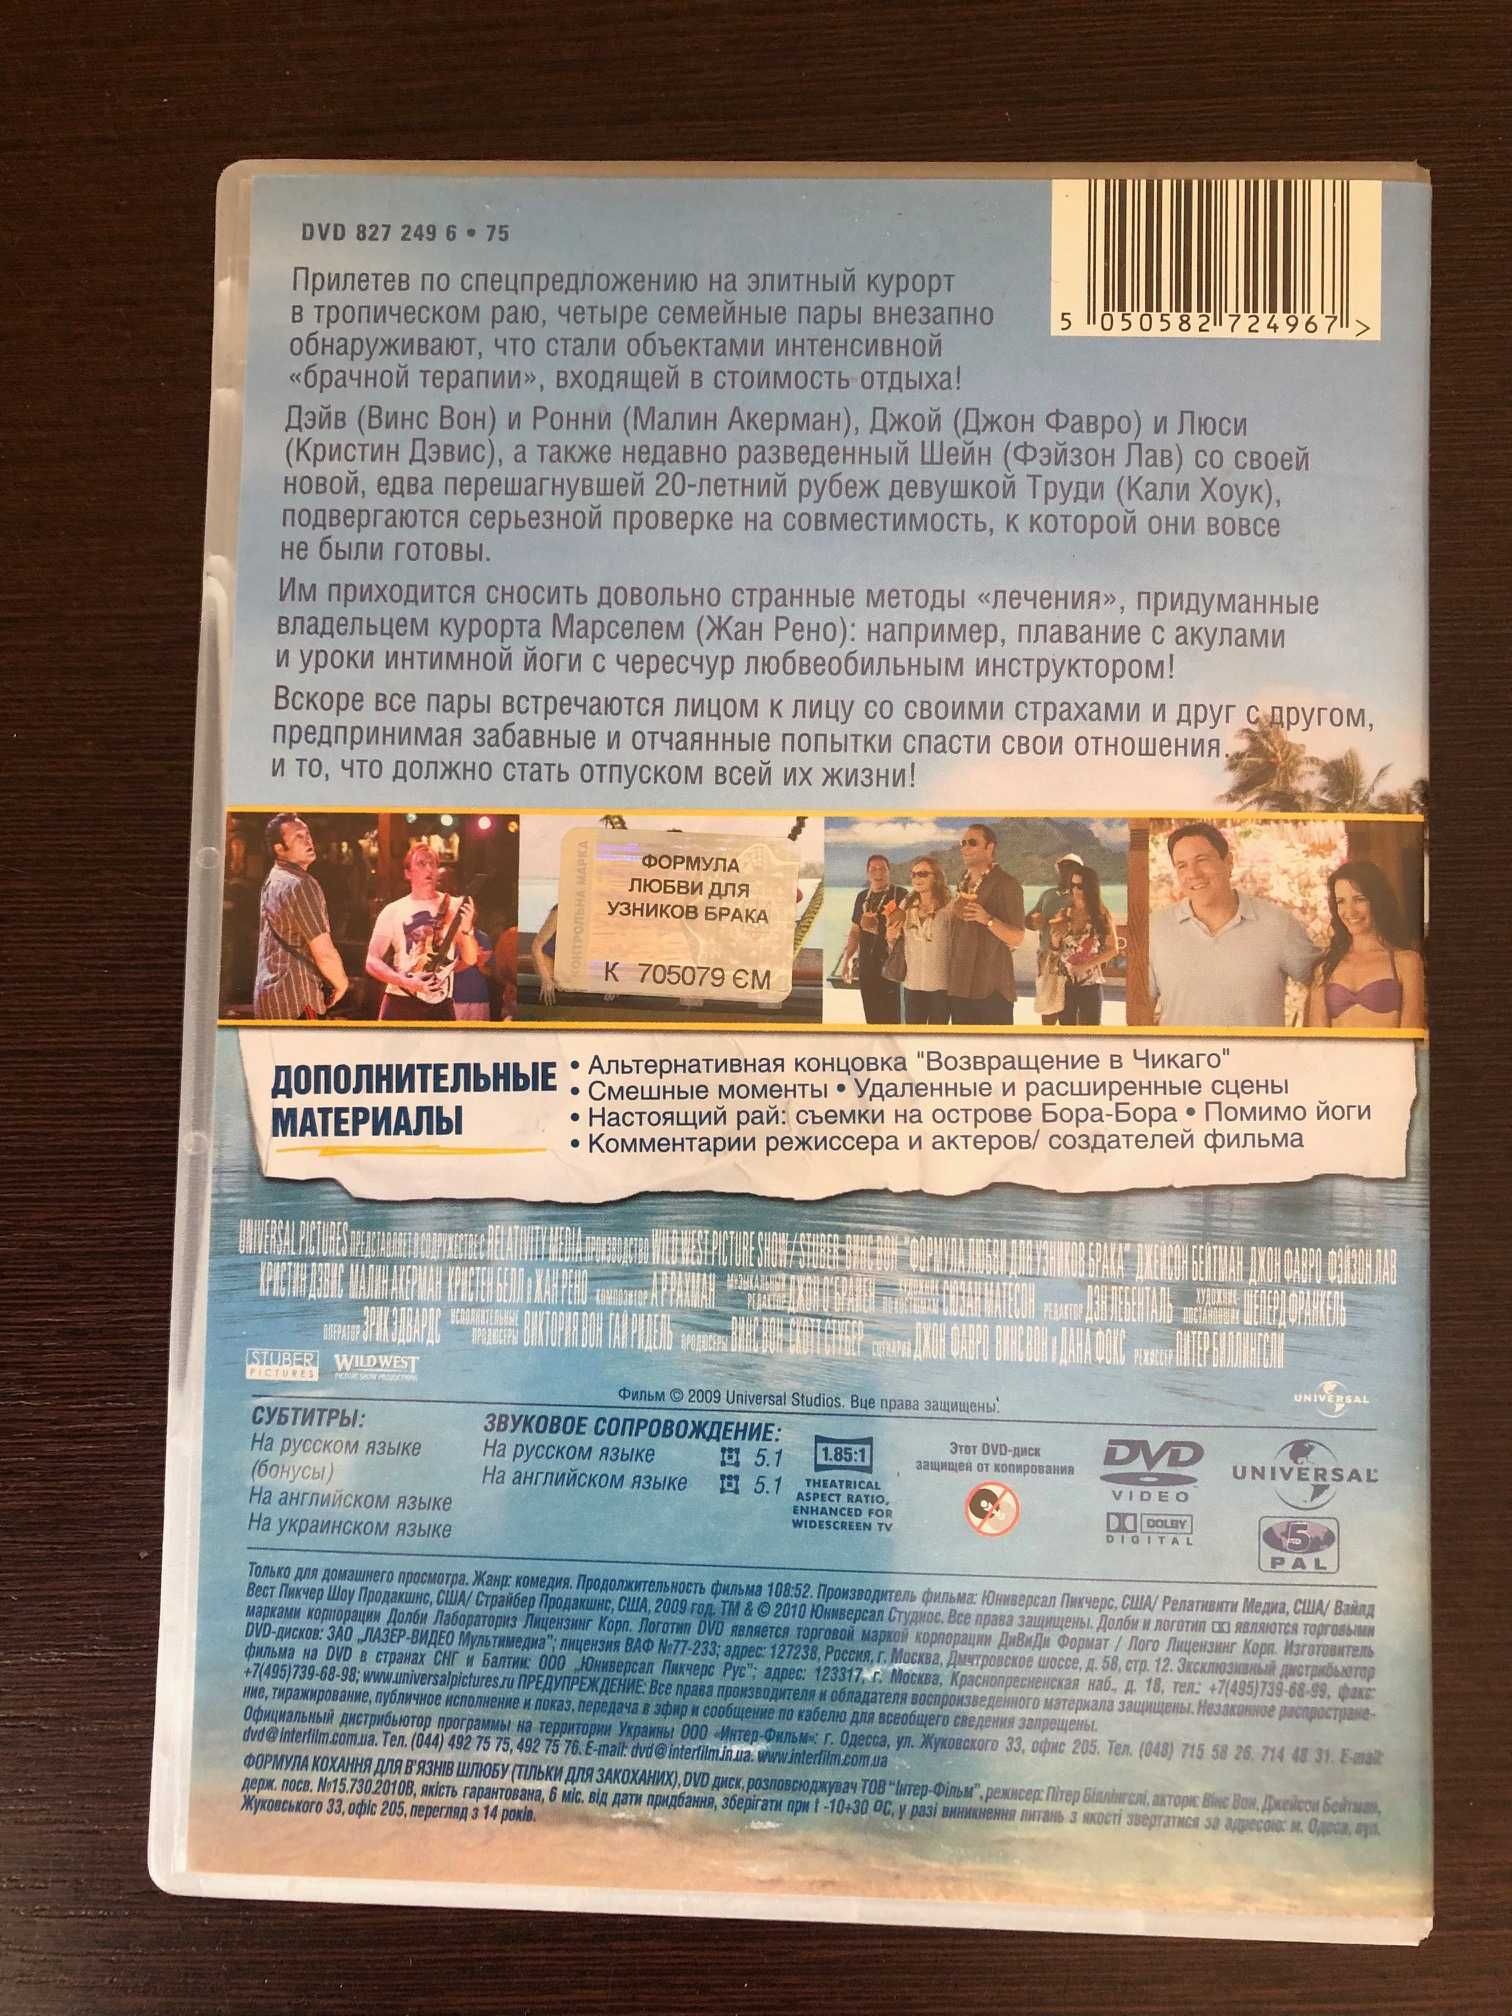 Кинокомедия на DVD «Формула любви для узников брака» 2009 год